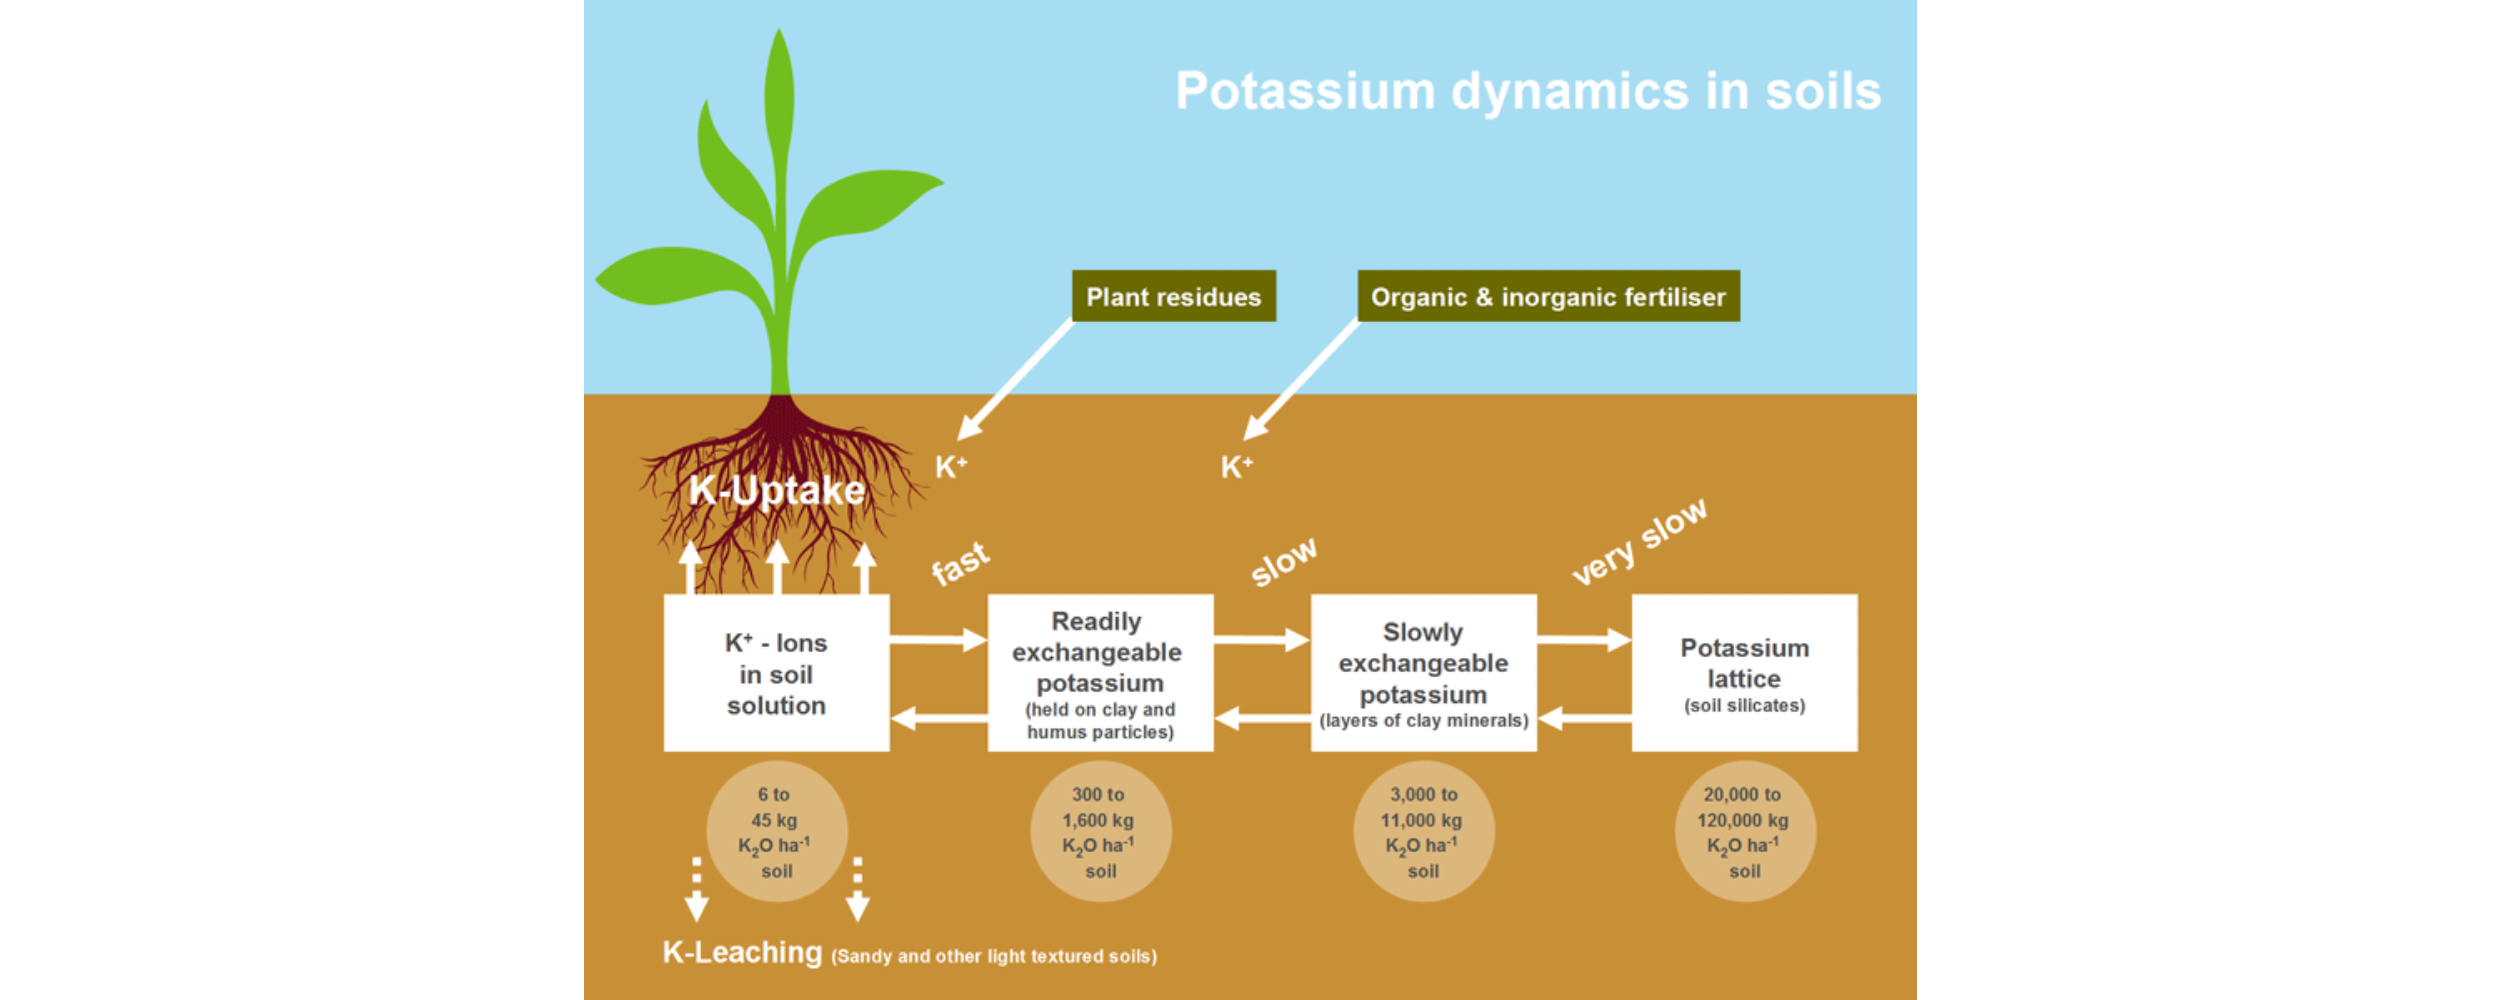 Potassium dynamics in soils